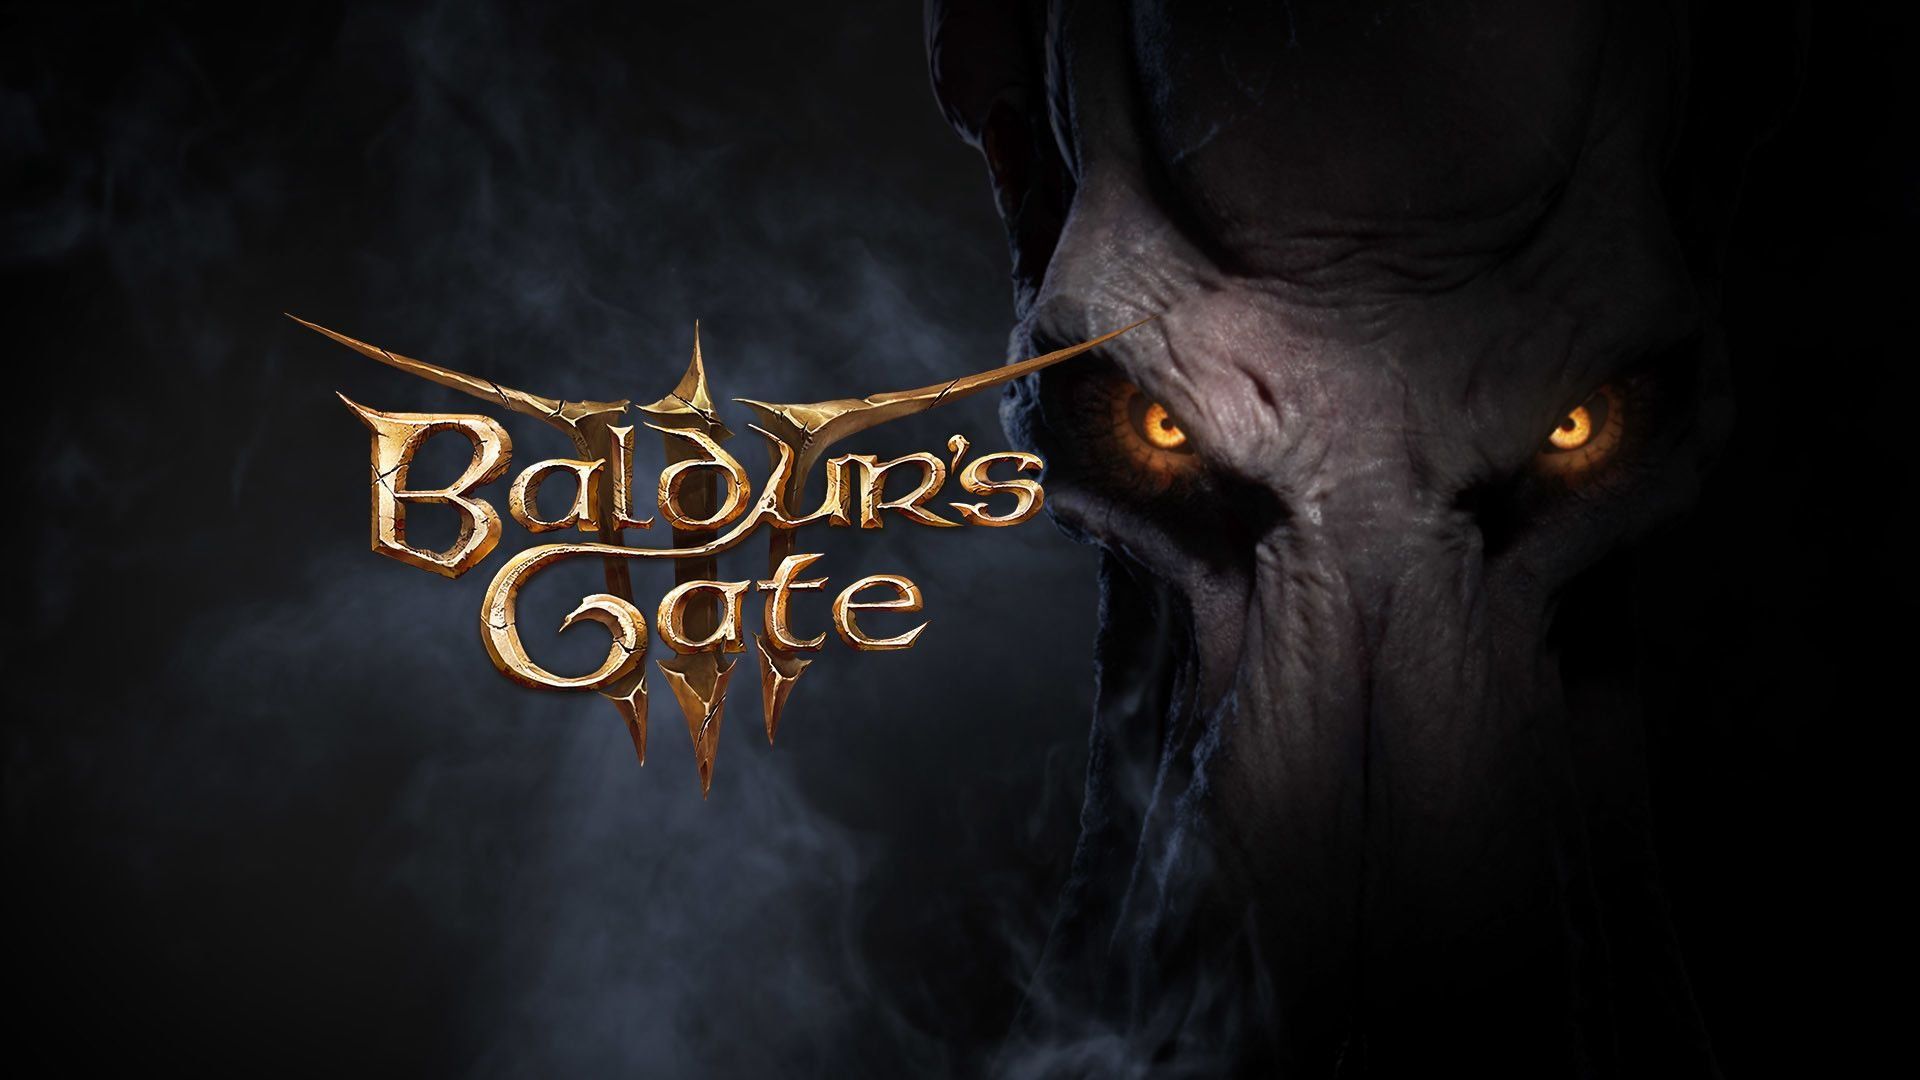 "Laissez le jeu en paix", Baldur's Gate 3 bientôt sur Netflix ? La rumeur enfle et ne plaît pas du tout aux fans...